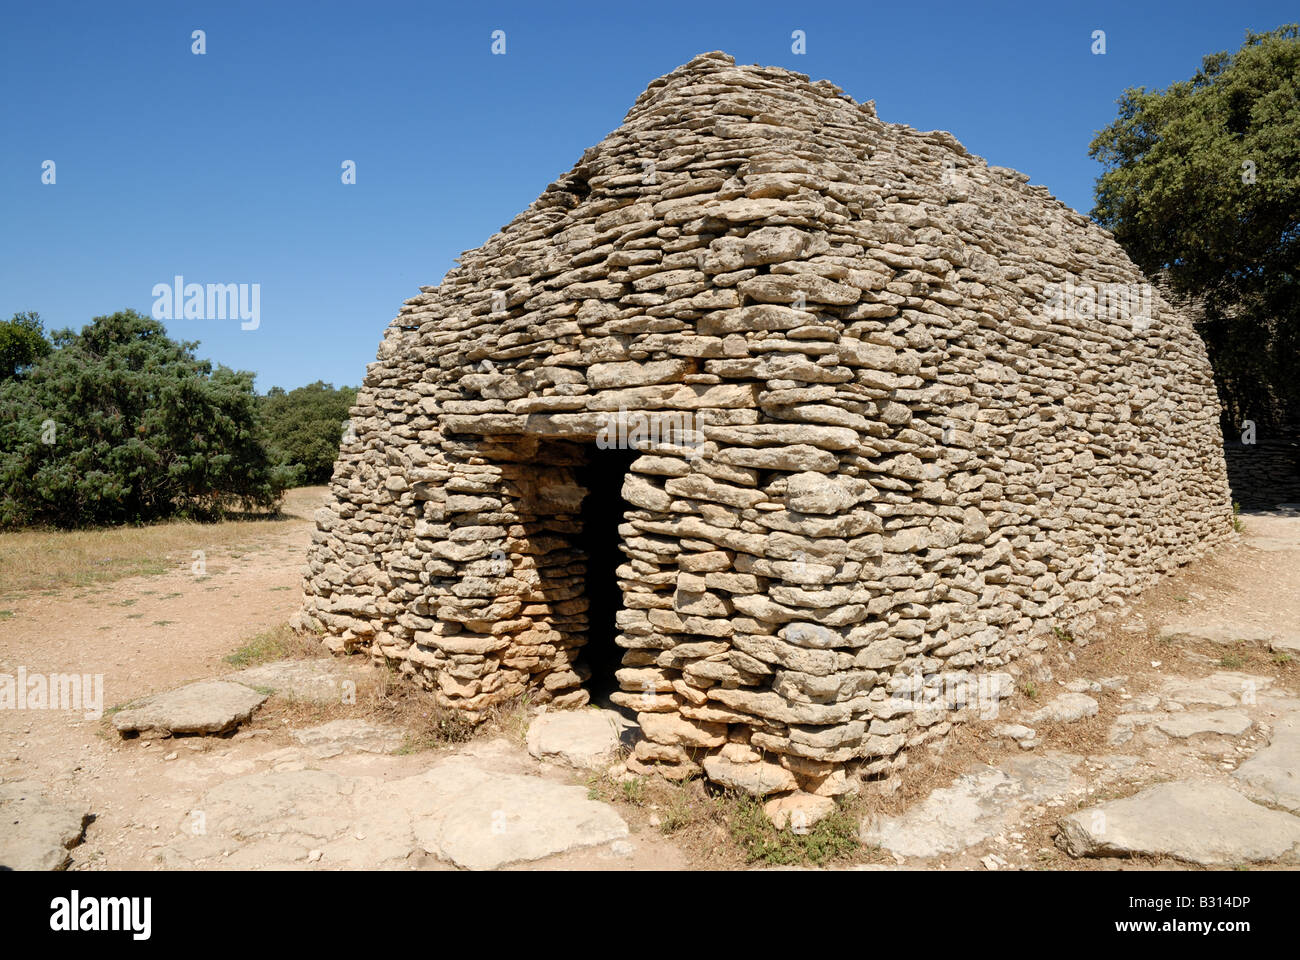 Borie - dry-médiévale en pierre dans le sud de la France Banque D'Images